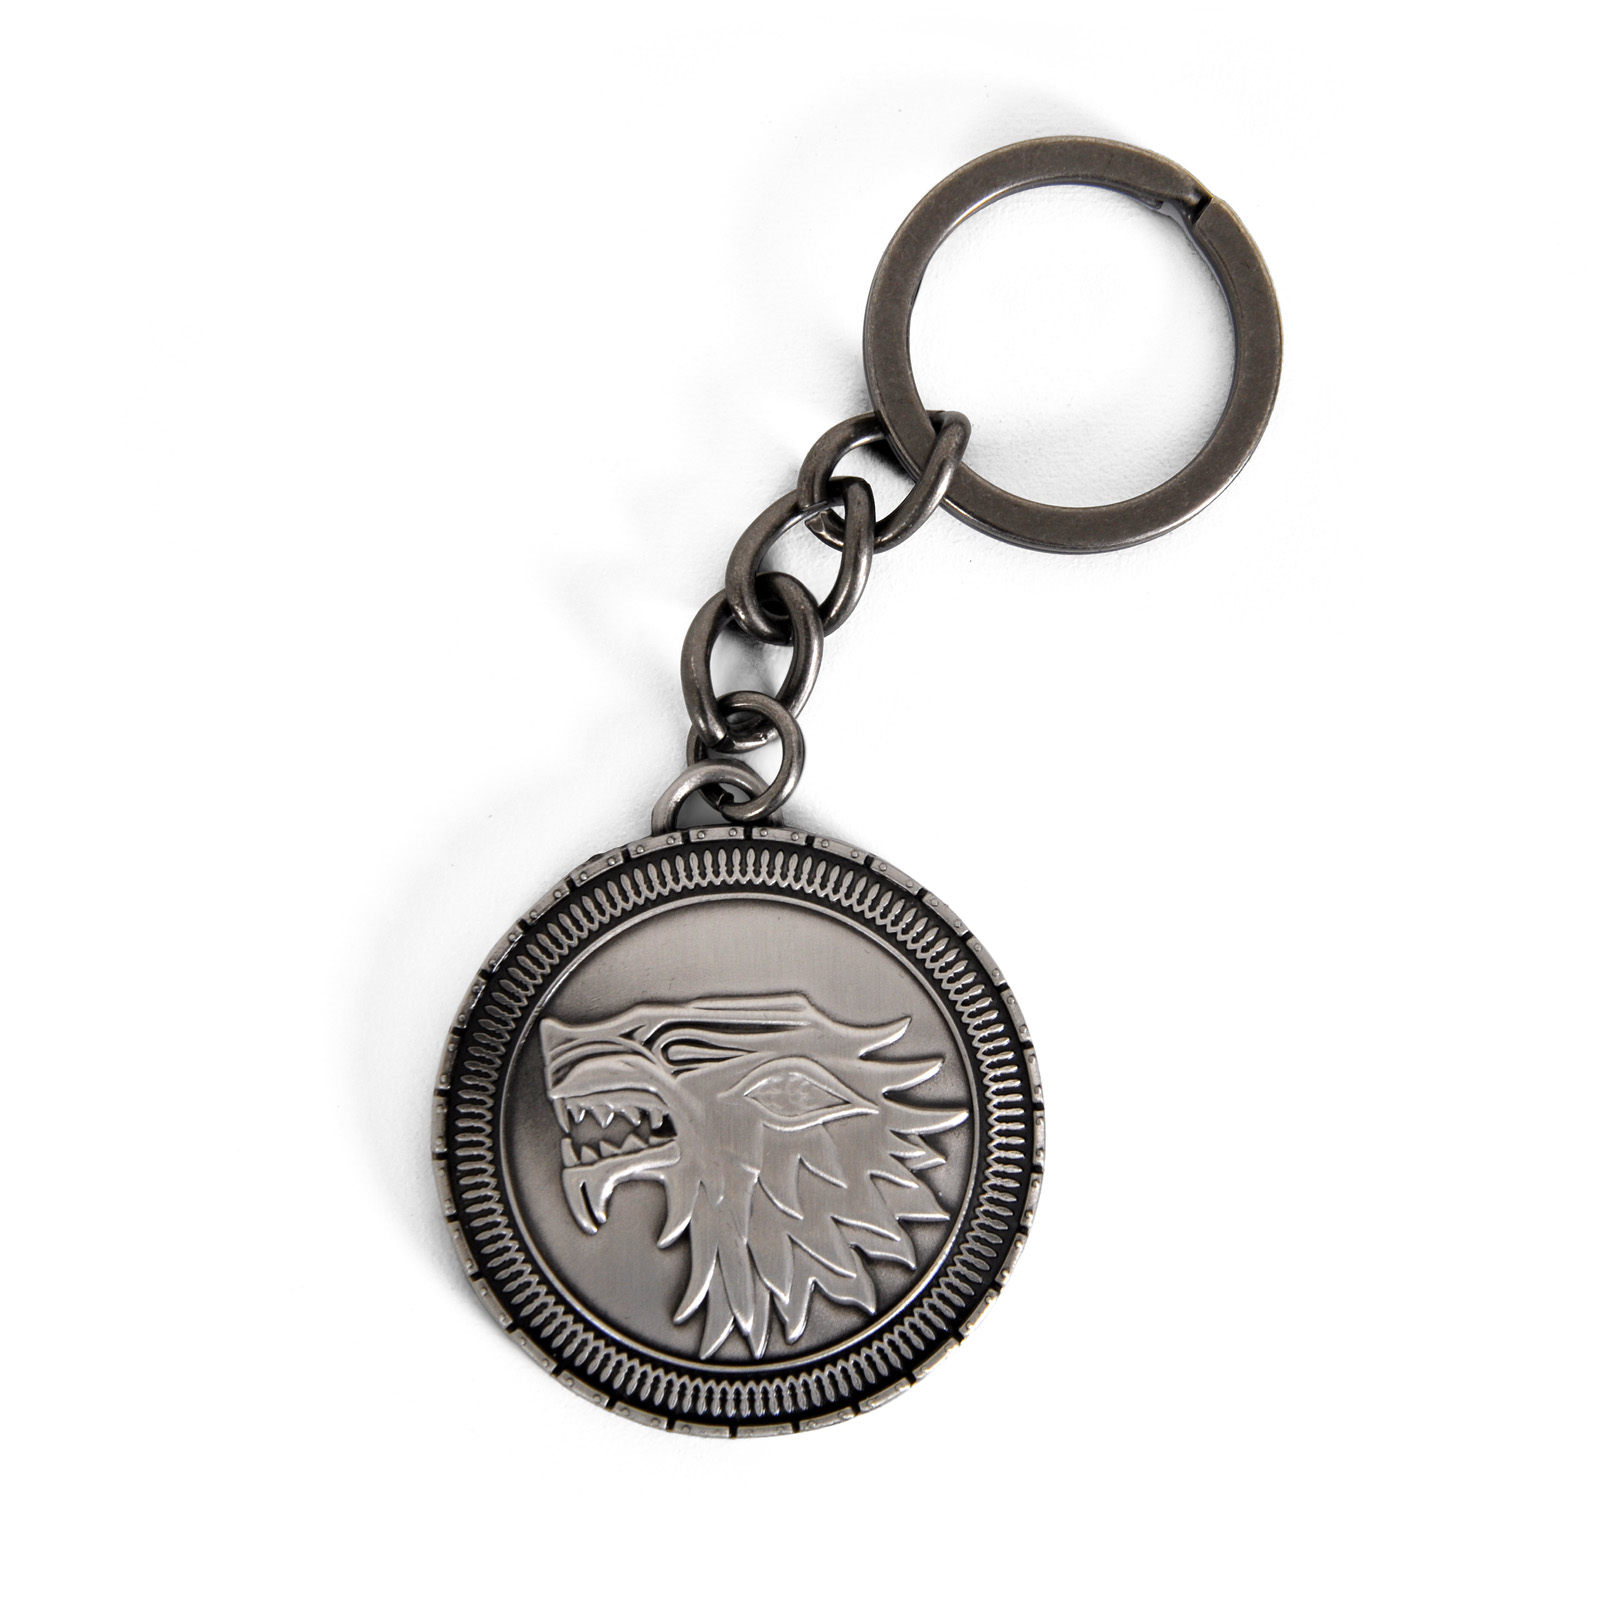 Offiziell Game Of Thrones Schlüsselanhänger Keychain Film TV Geschenk 